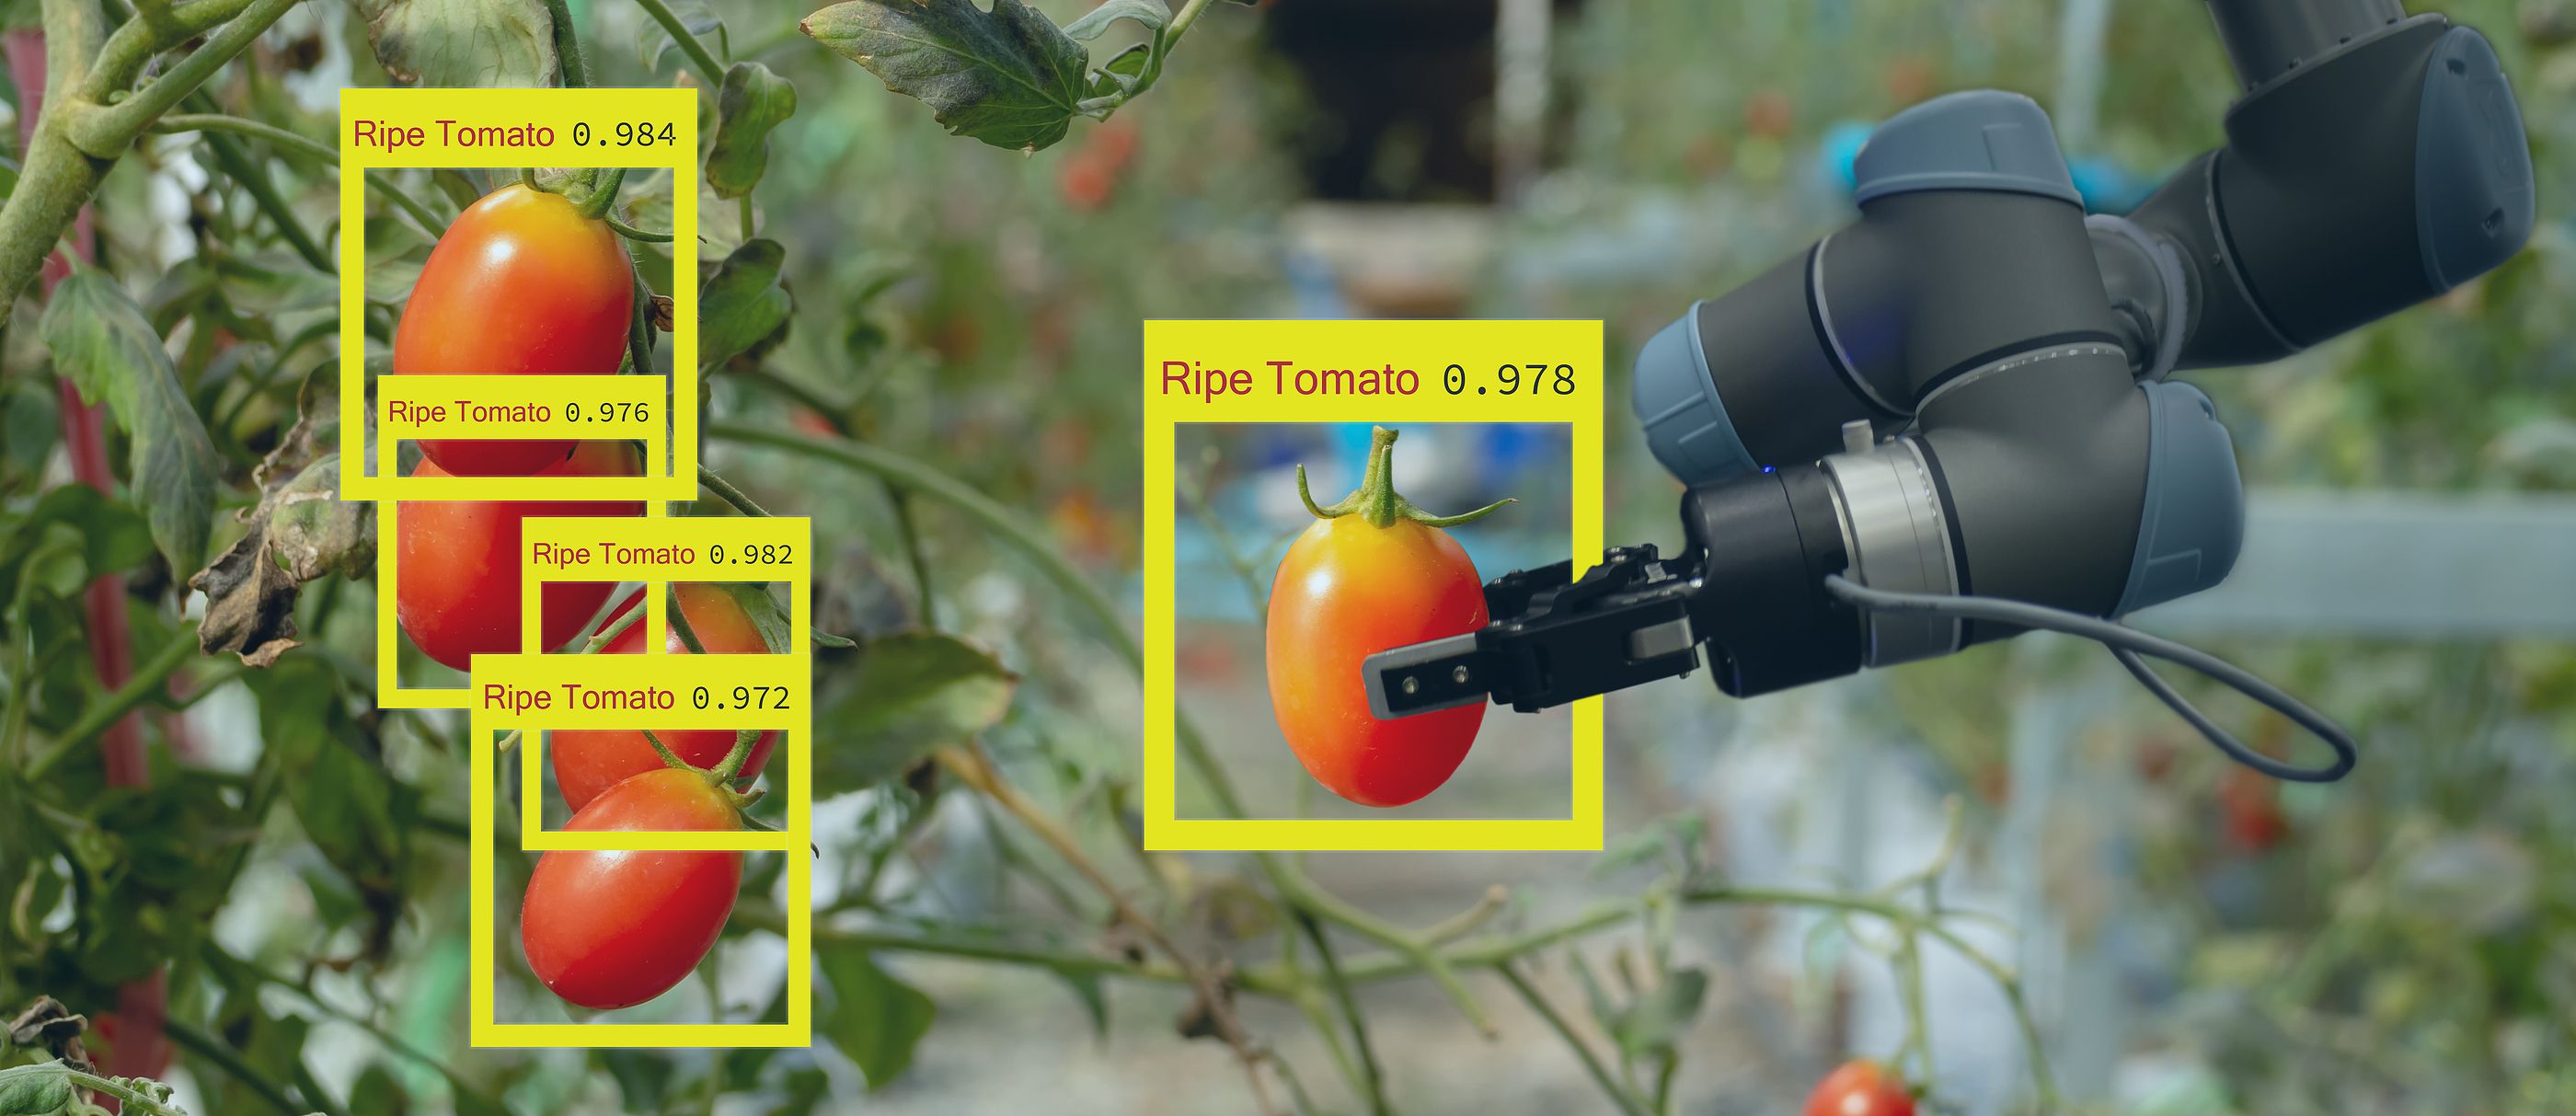 Desarrollan un robot autónomo capaz de recoger frutas y verduras sin dañarlas